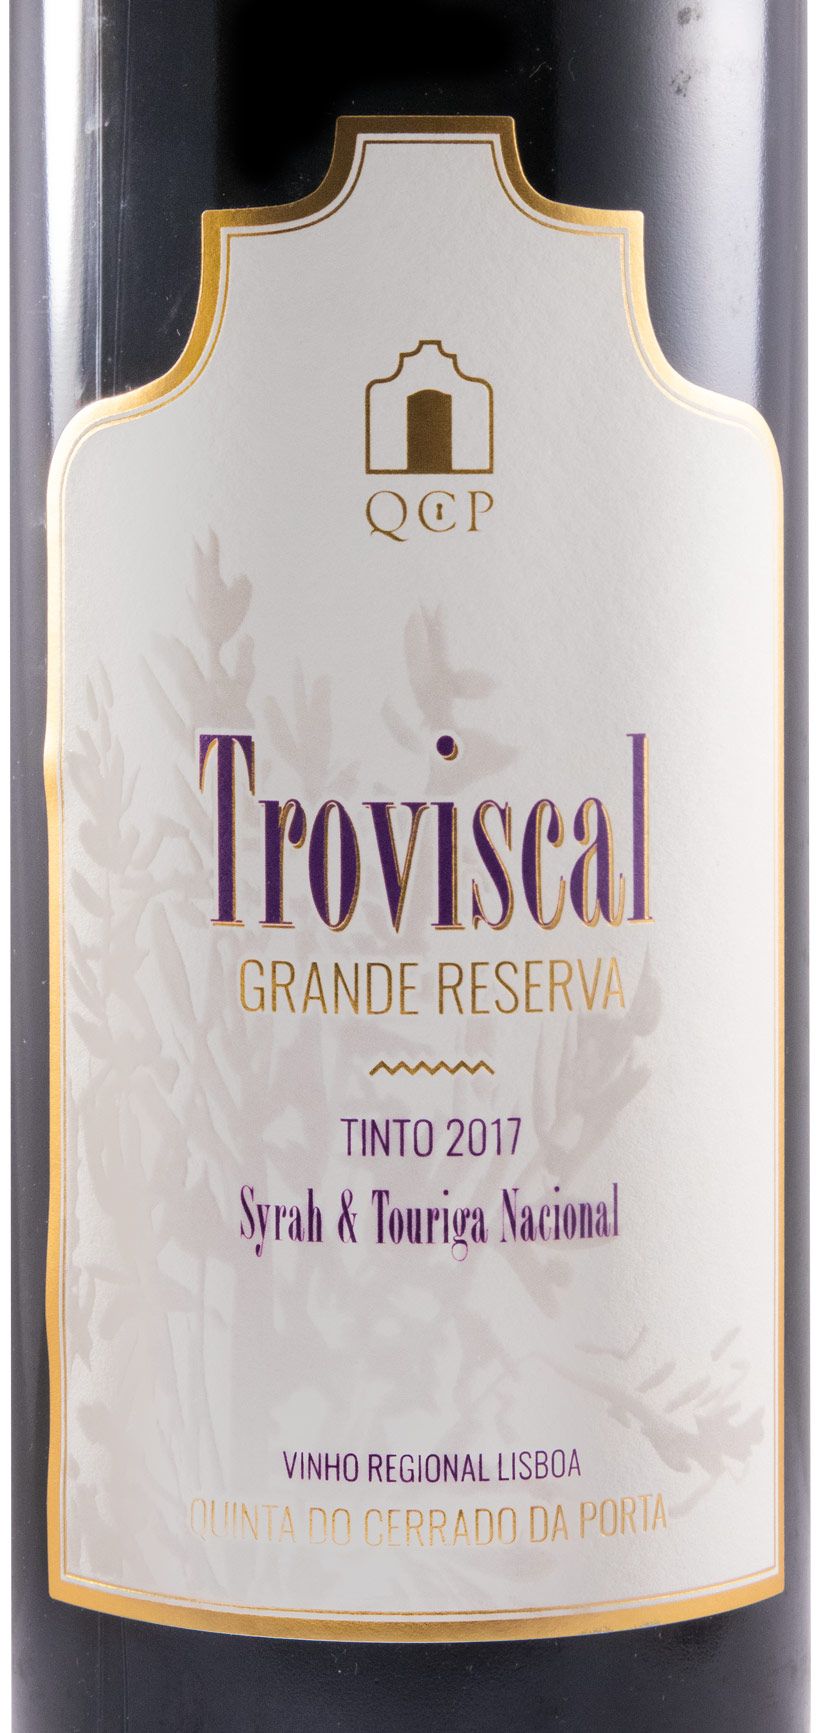 2017 Troviscal Grande Reserva tinto